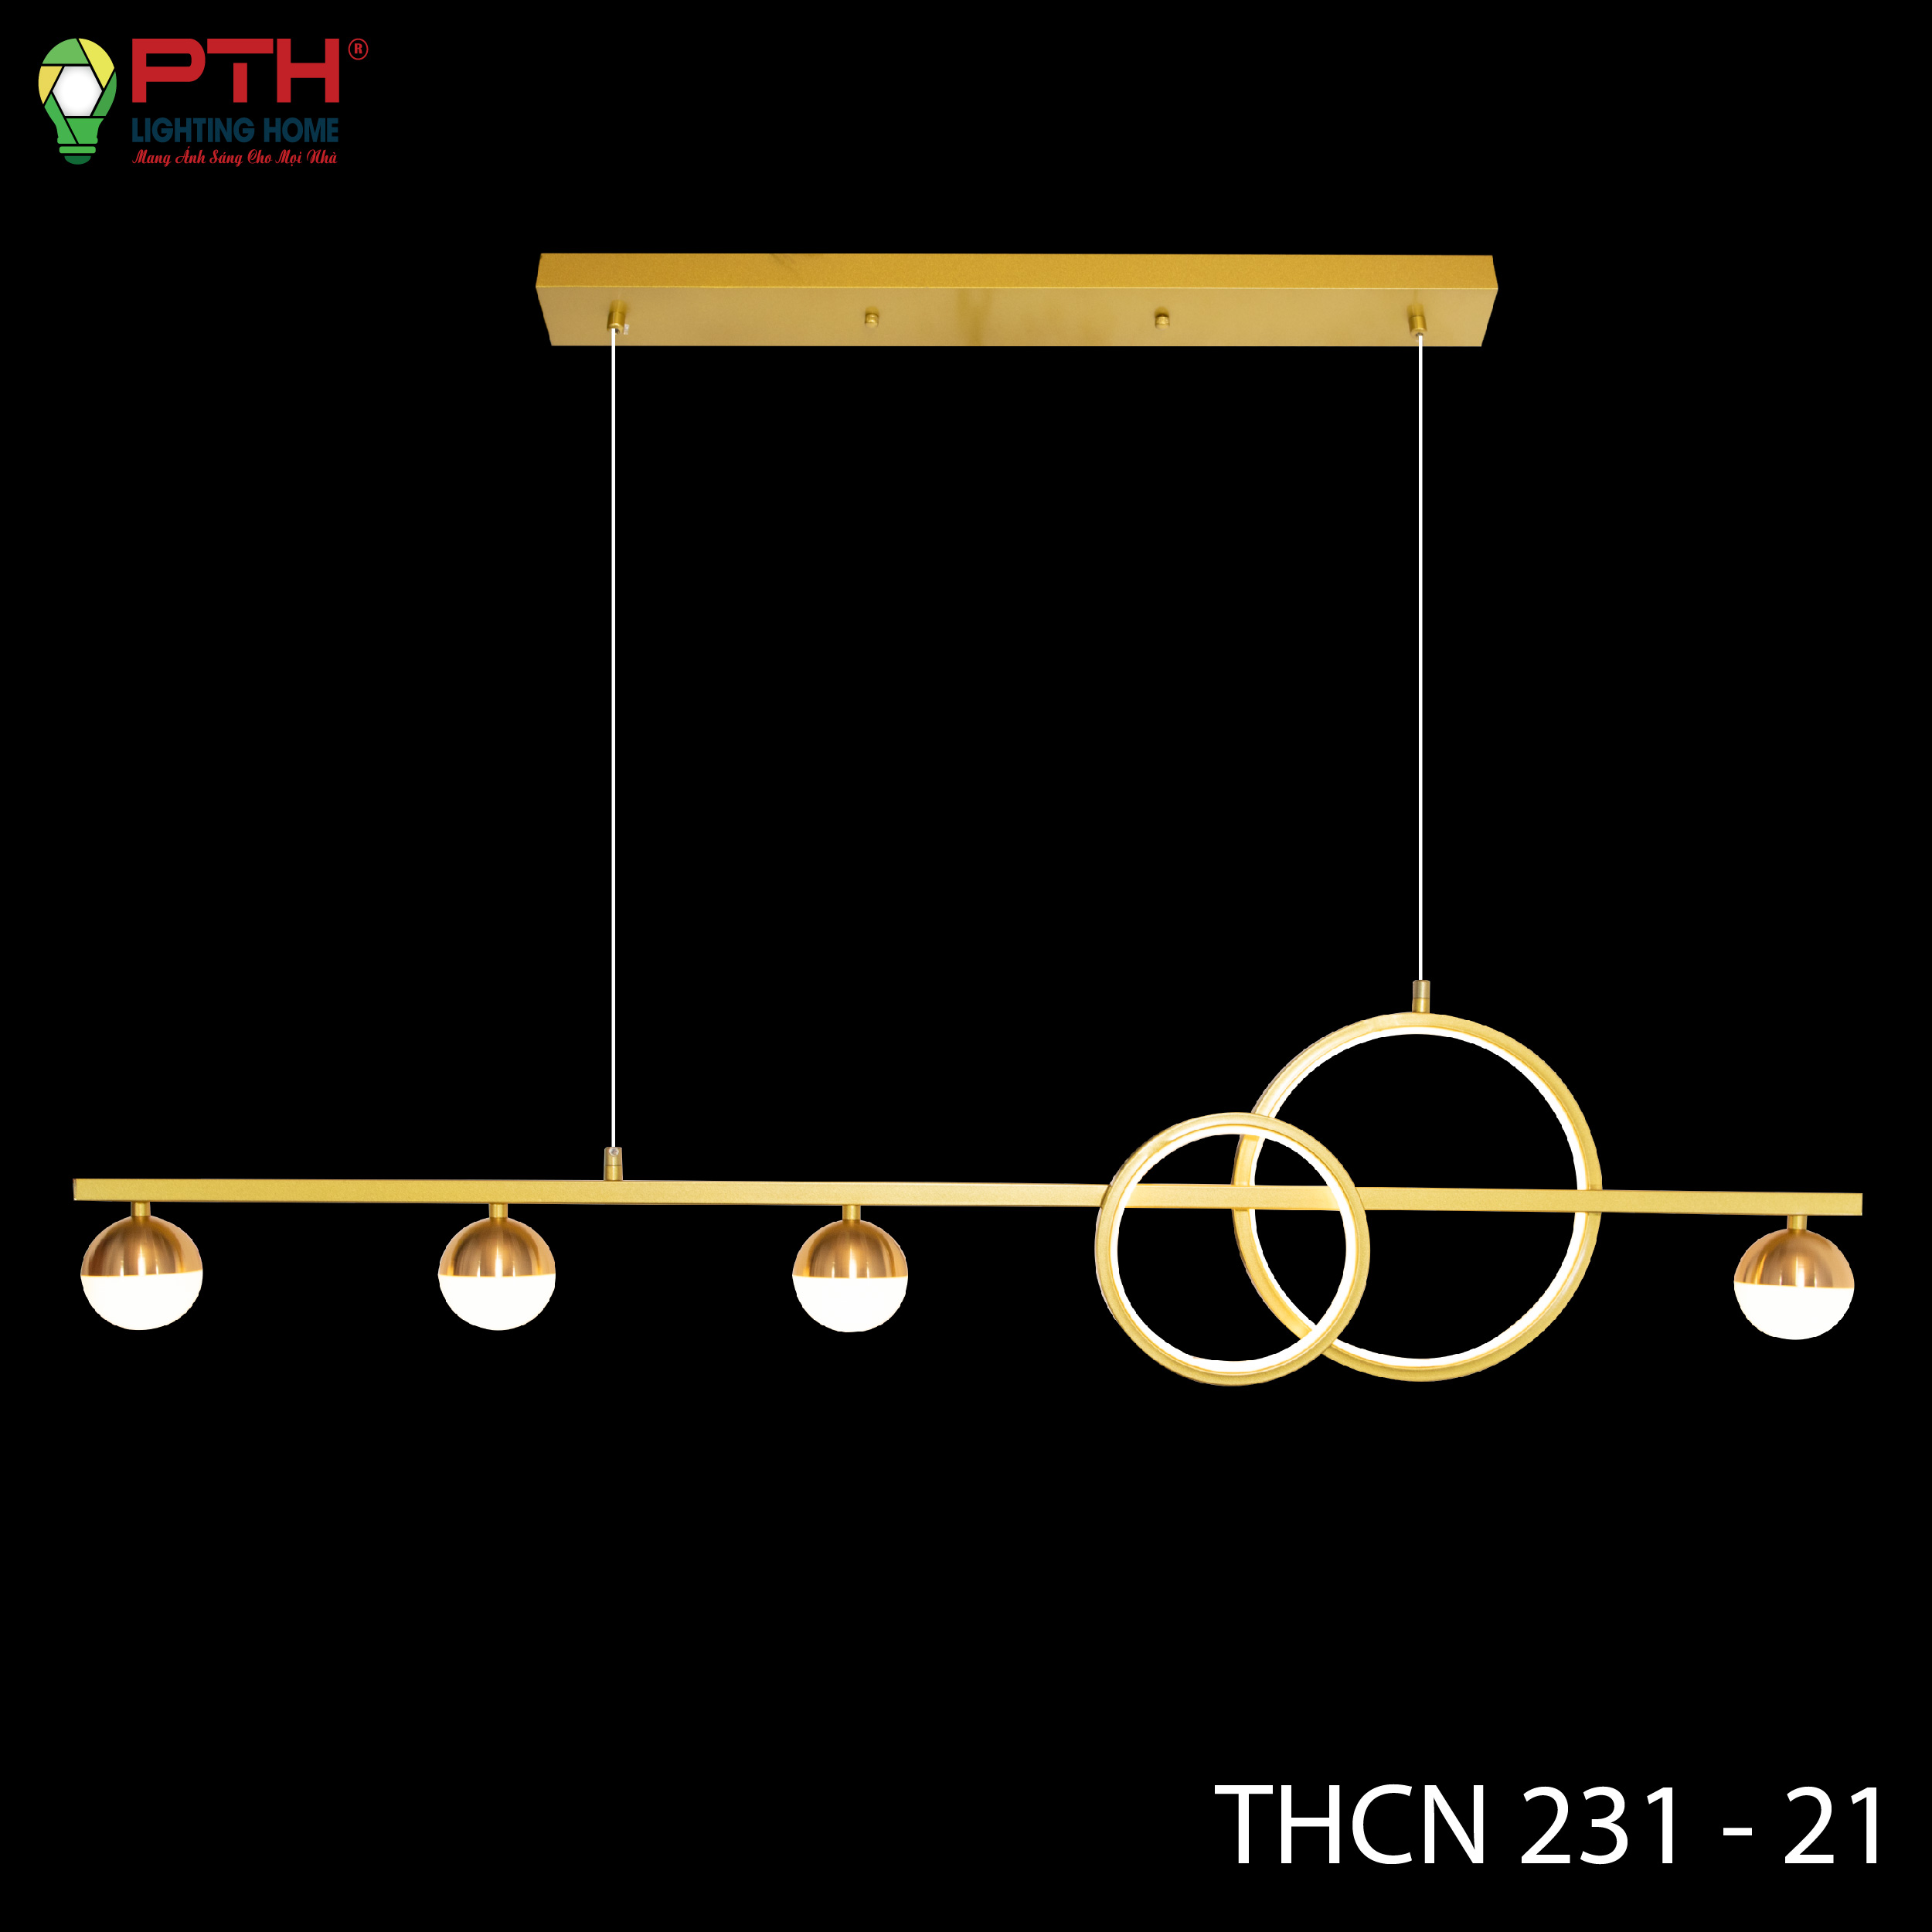 Thcn 231 - 21 - A-01